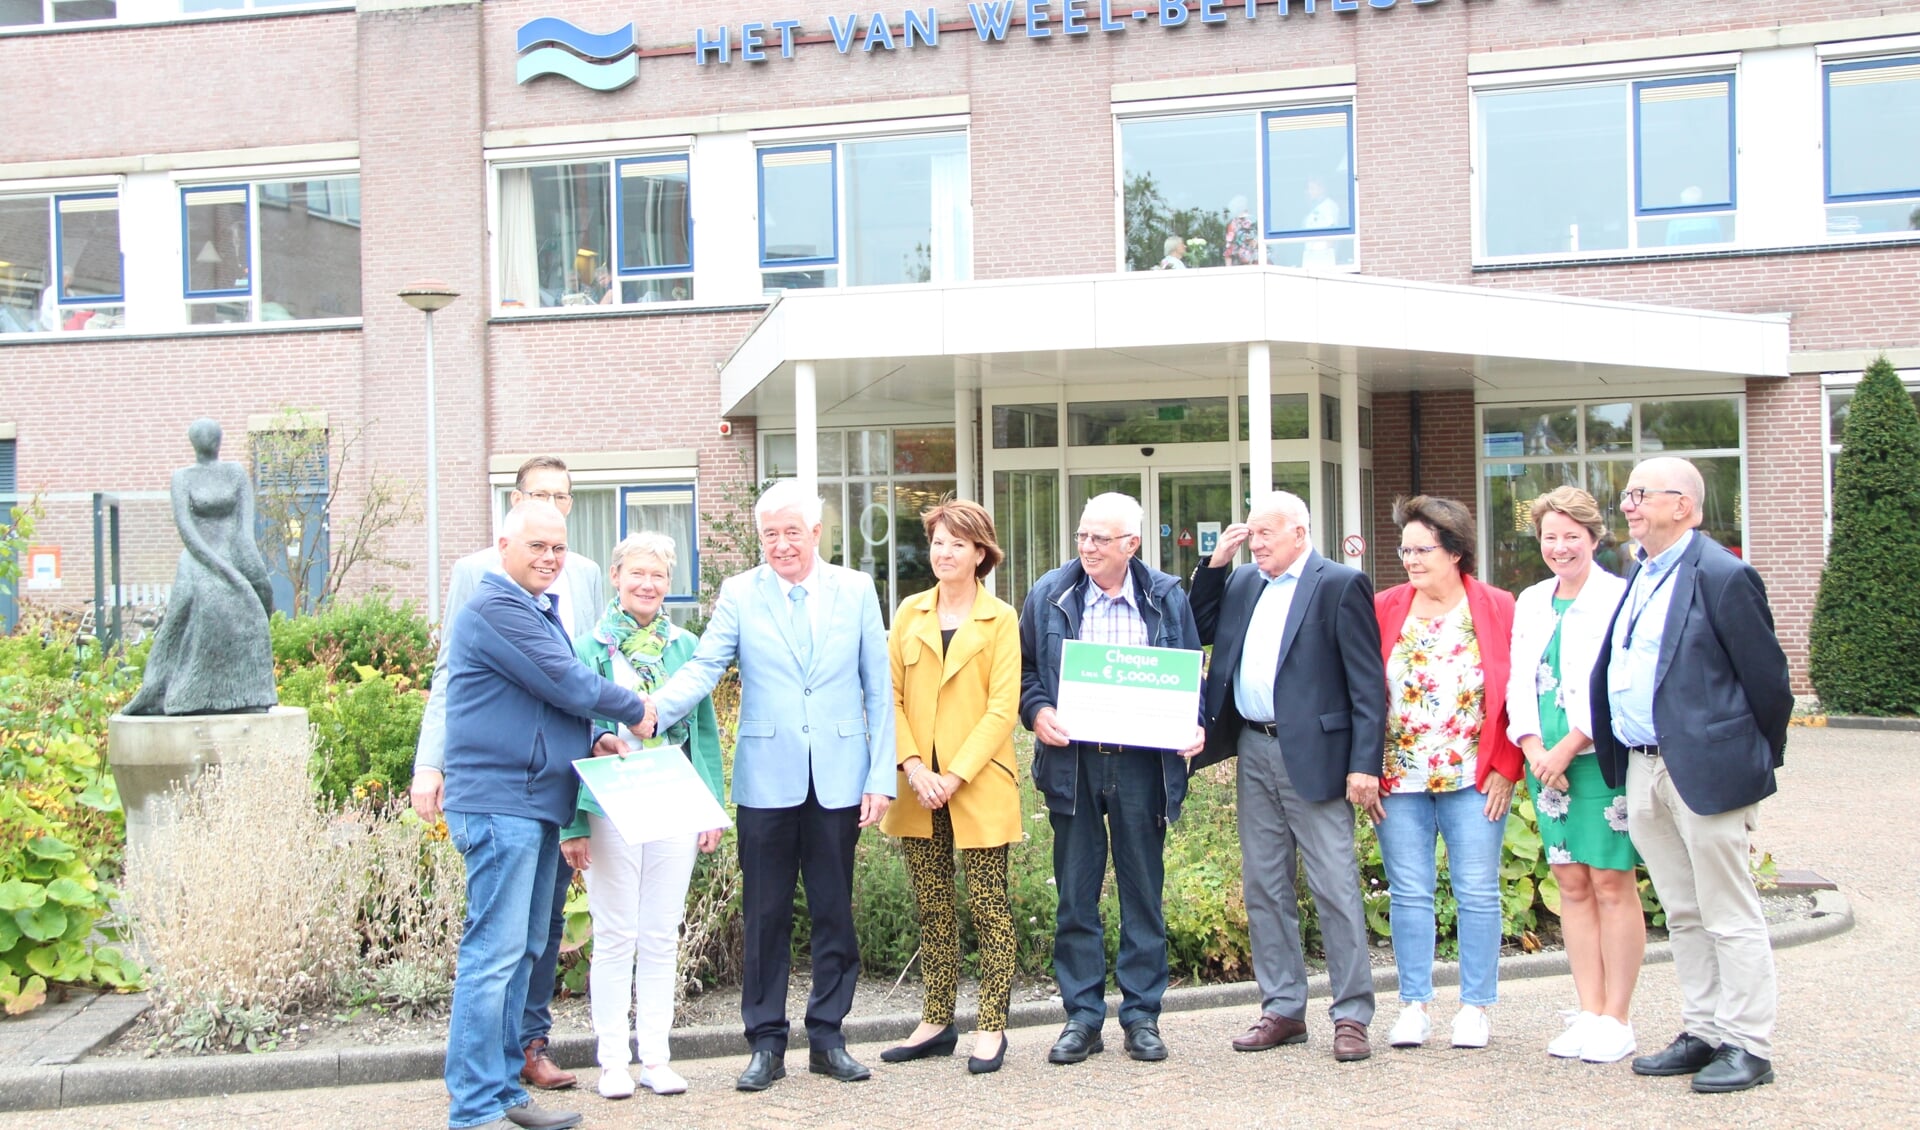 Op 11 september heeft de Landarbeidersvereniging 'De Vooruitgang' uit Middelharnis ter ere van hun 100-jarig bestaan twee cheques van €5000,- uitgereikt. 